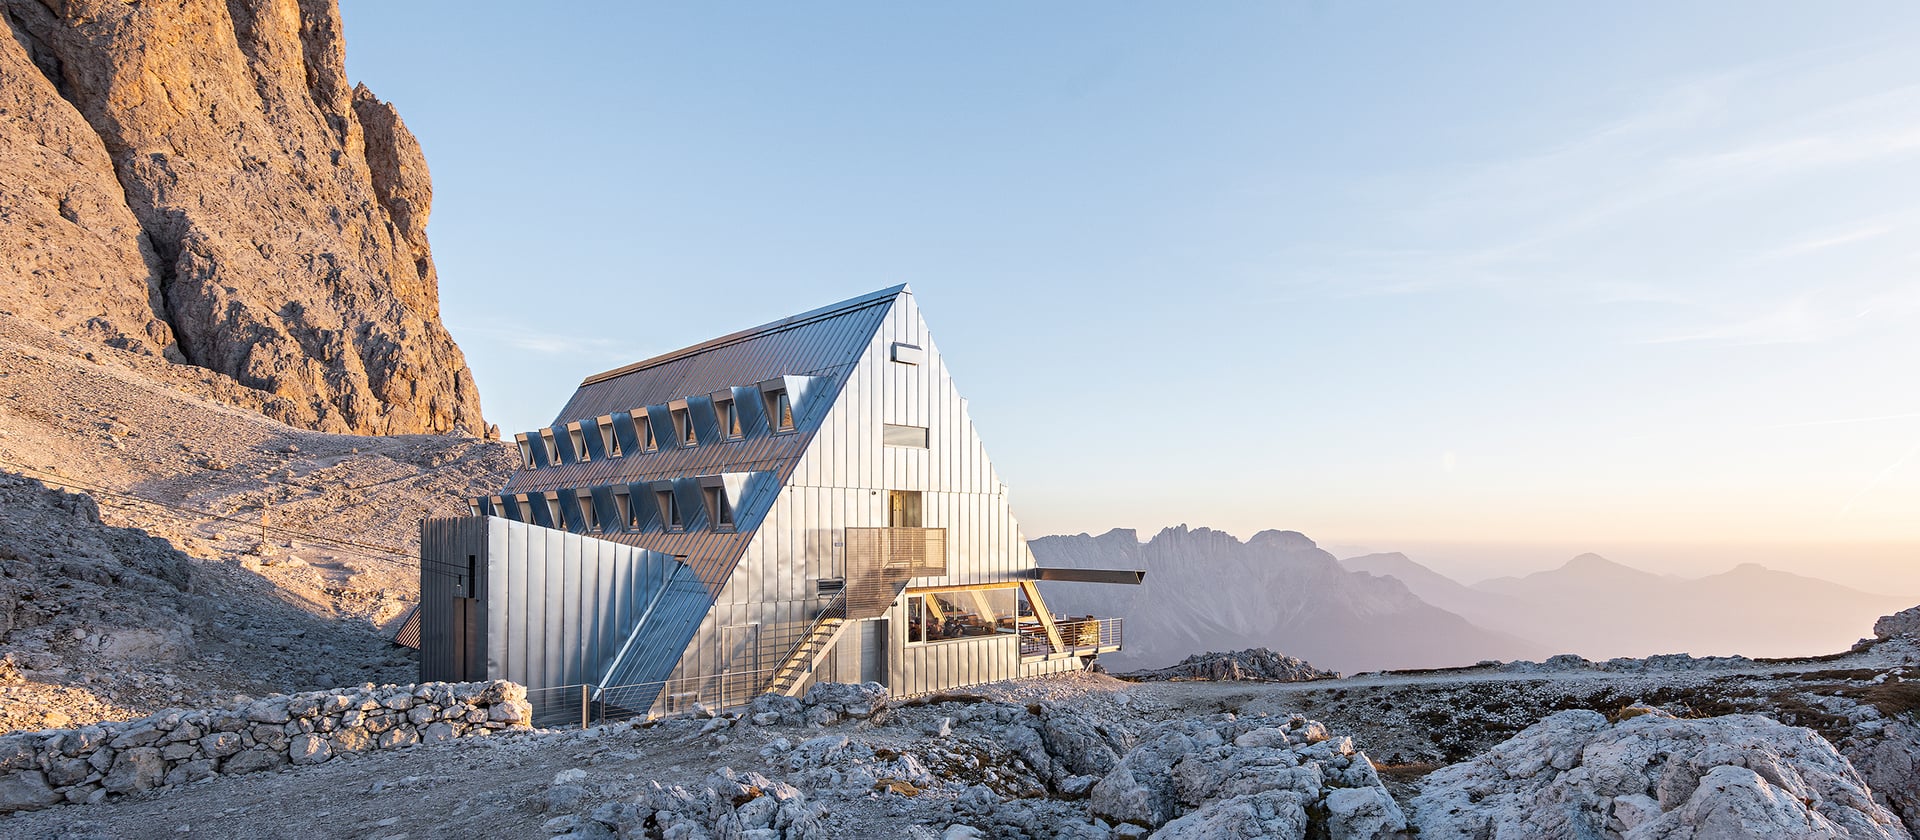 Santnerpasshütte in Südtirol